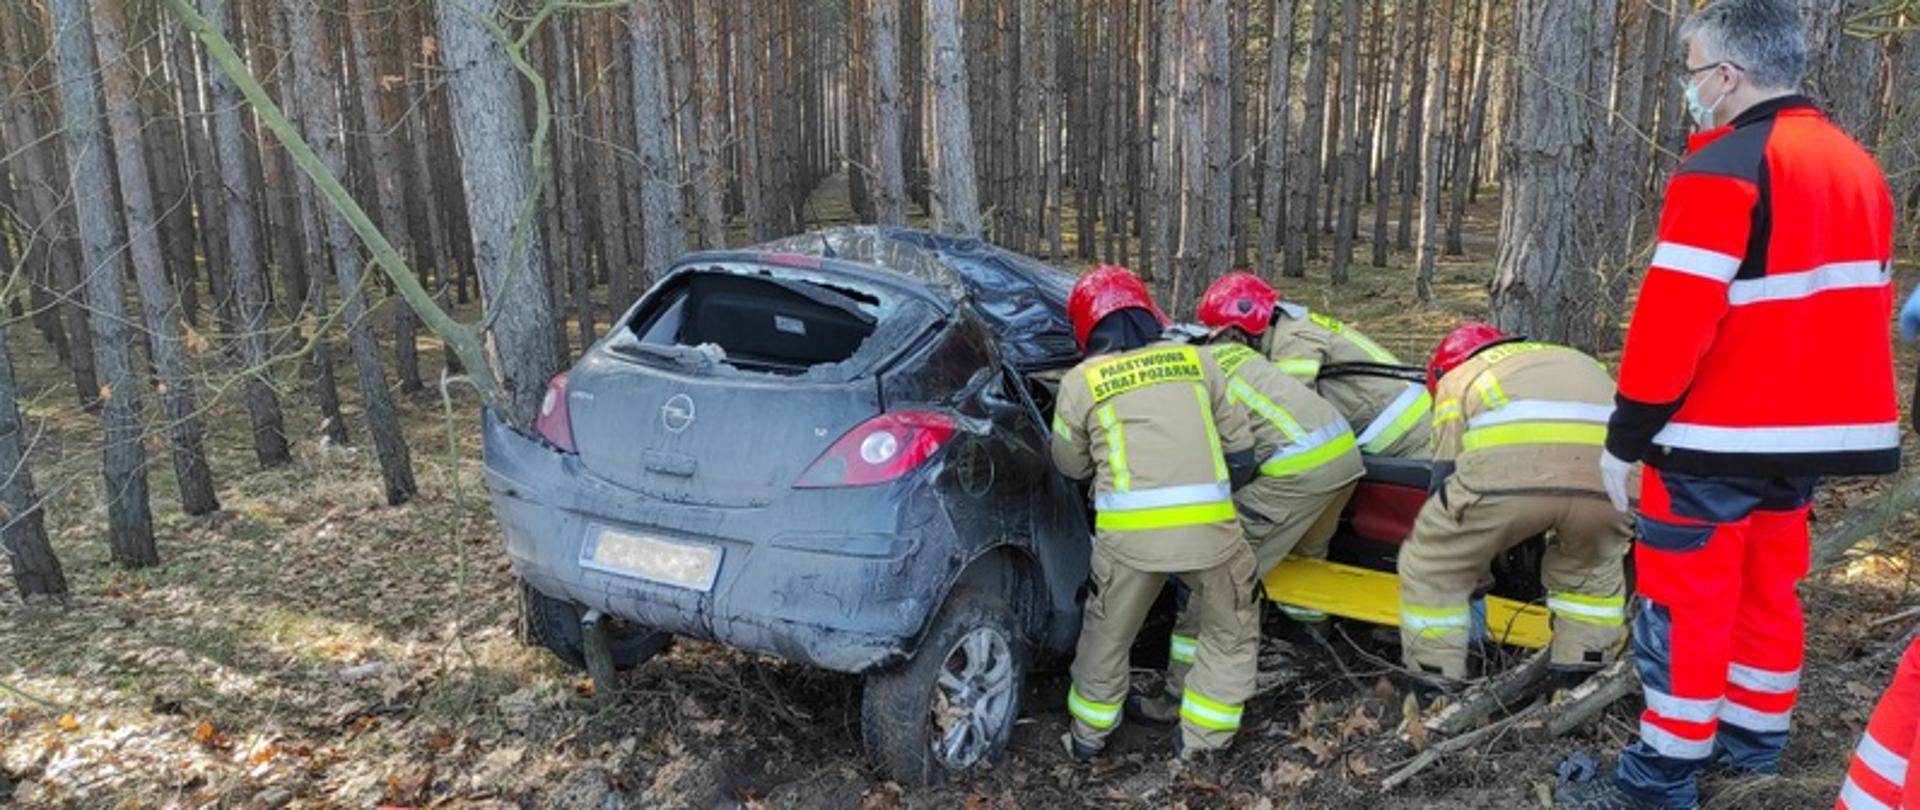 Na zdjęciu widać ciemny samochód Opel Corsa, który wjechał do lasu, uderzając w drzewo. Od strony pasażera, czterech strażaków wydobywa poszkodowaną pasażerkę auta.